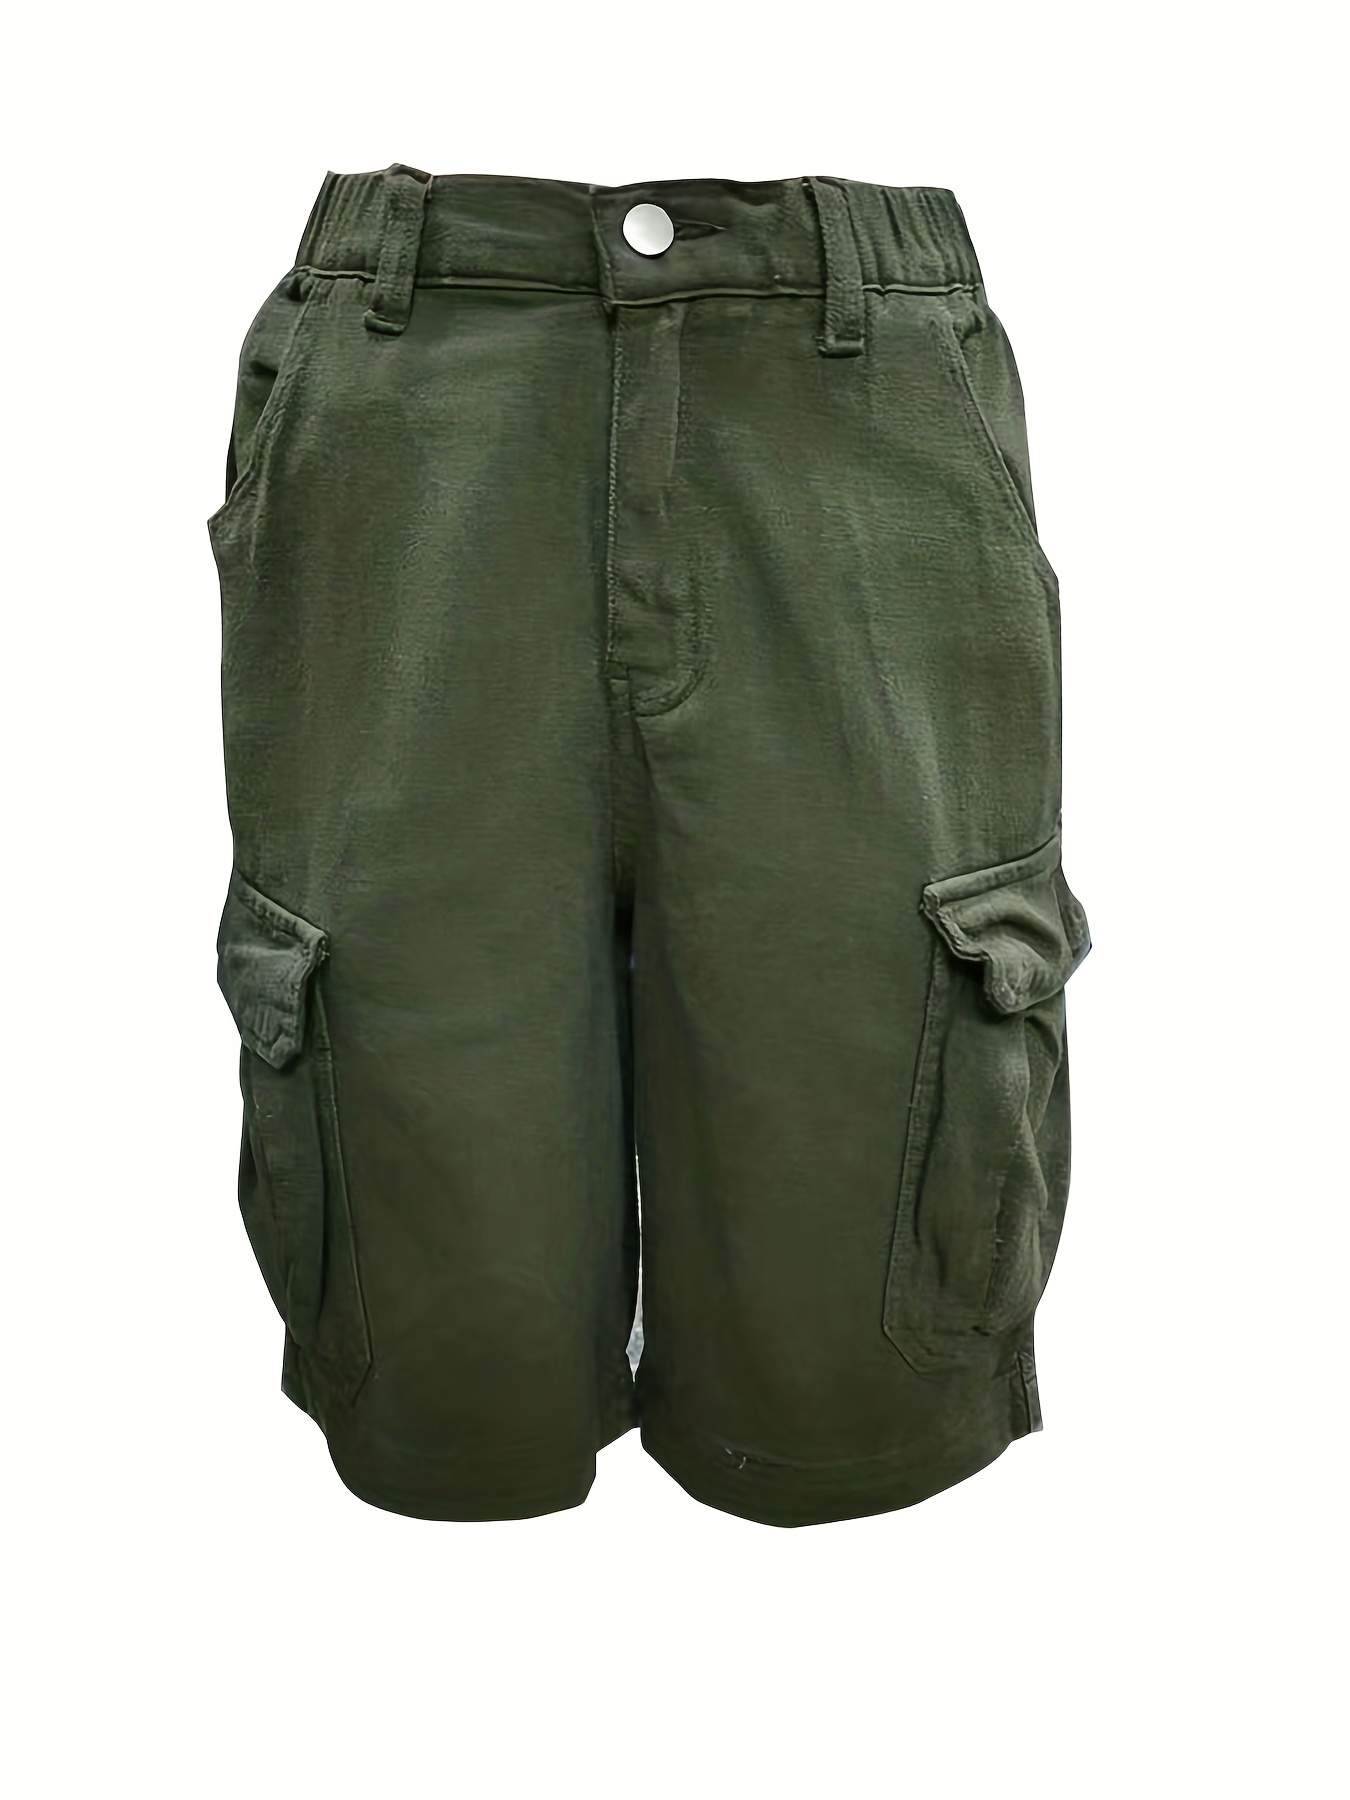 Pantalones Cortos De Mezclilla Cargo Verde Militar, Bolsillos Con Solapa,  Piernas Rectas, Cintura Elástica, Pantalones Cortos De Mezclilla, Estilo Kpo